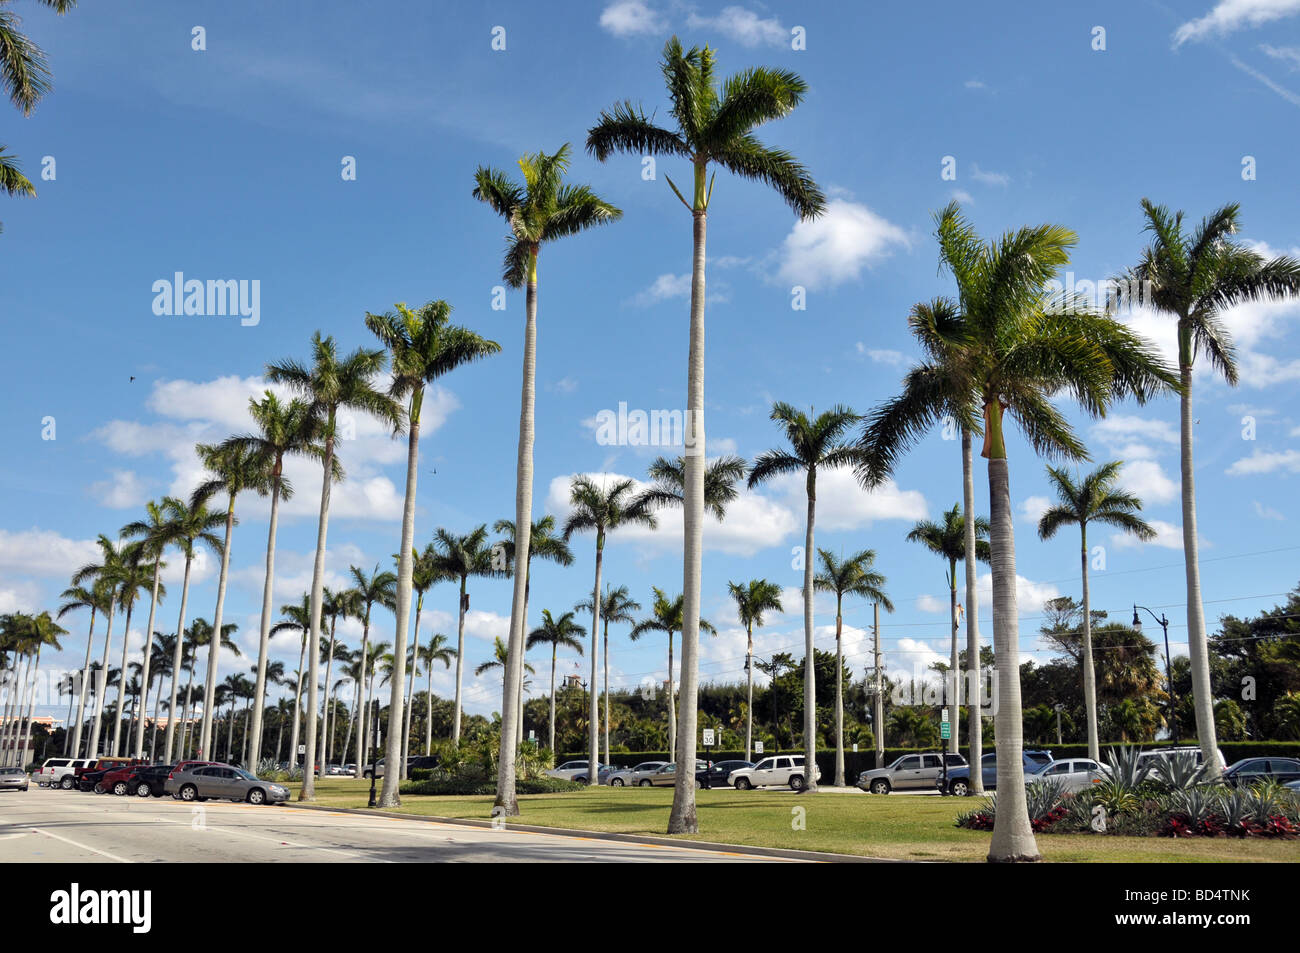 Royal Palms linea downtown Delray Beach Boulevard. Foto Stock